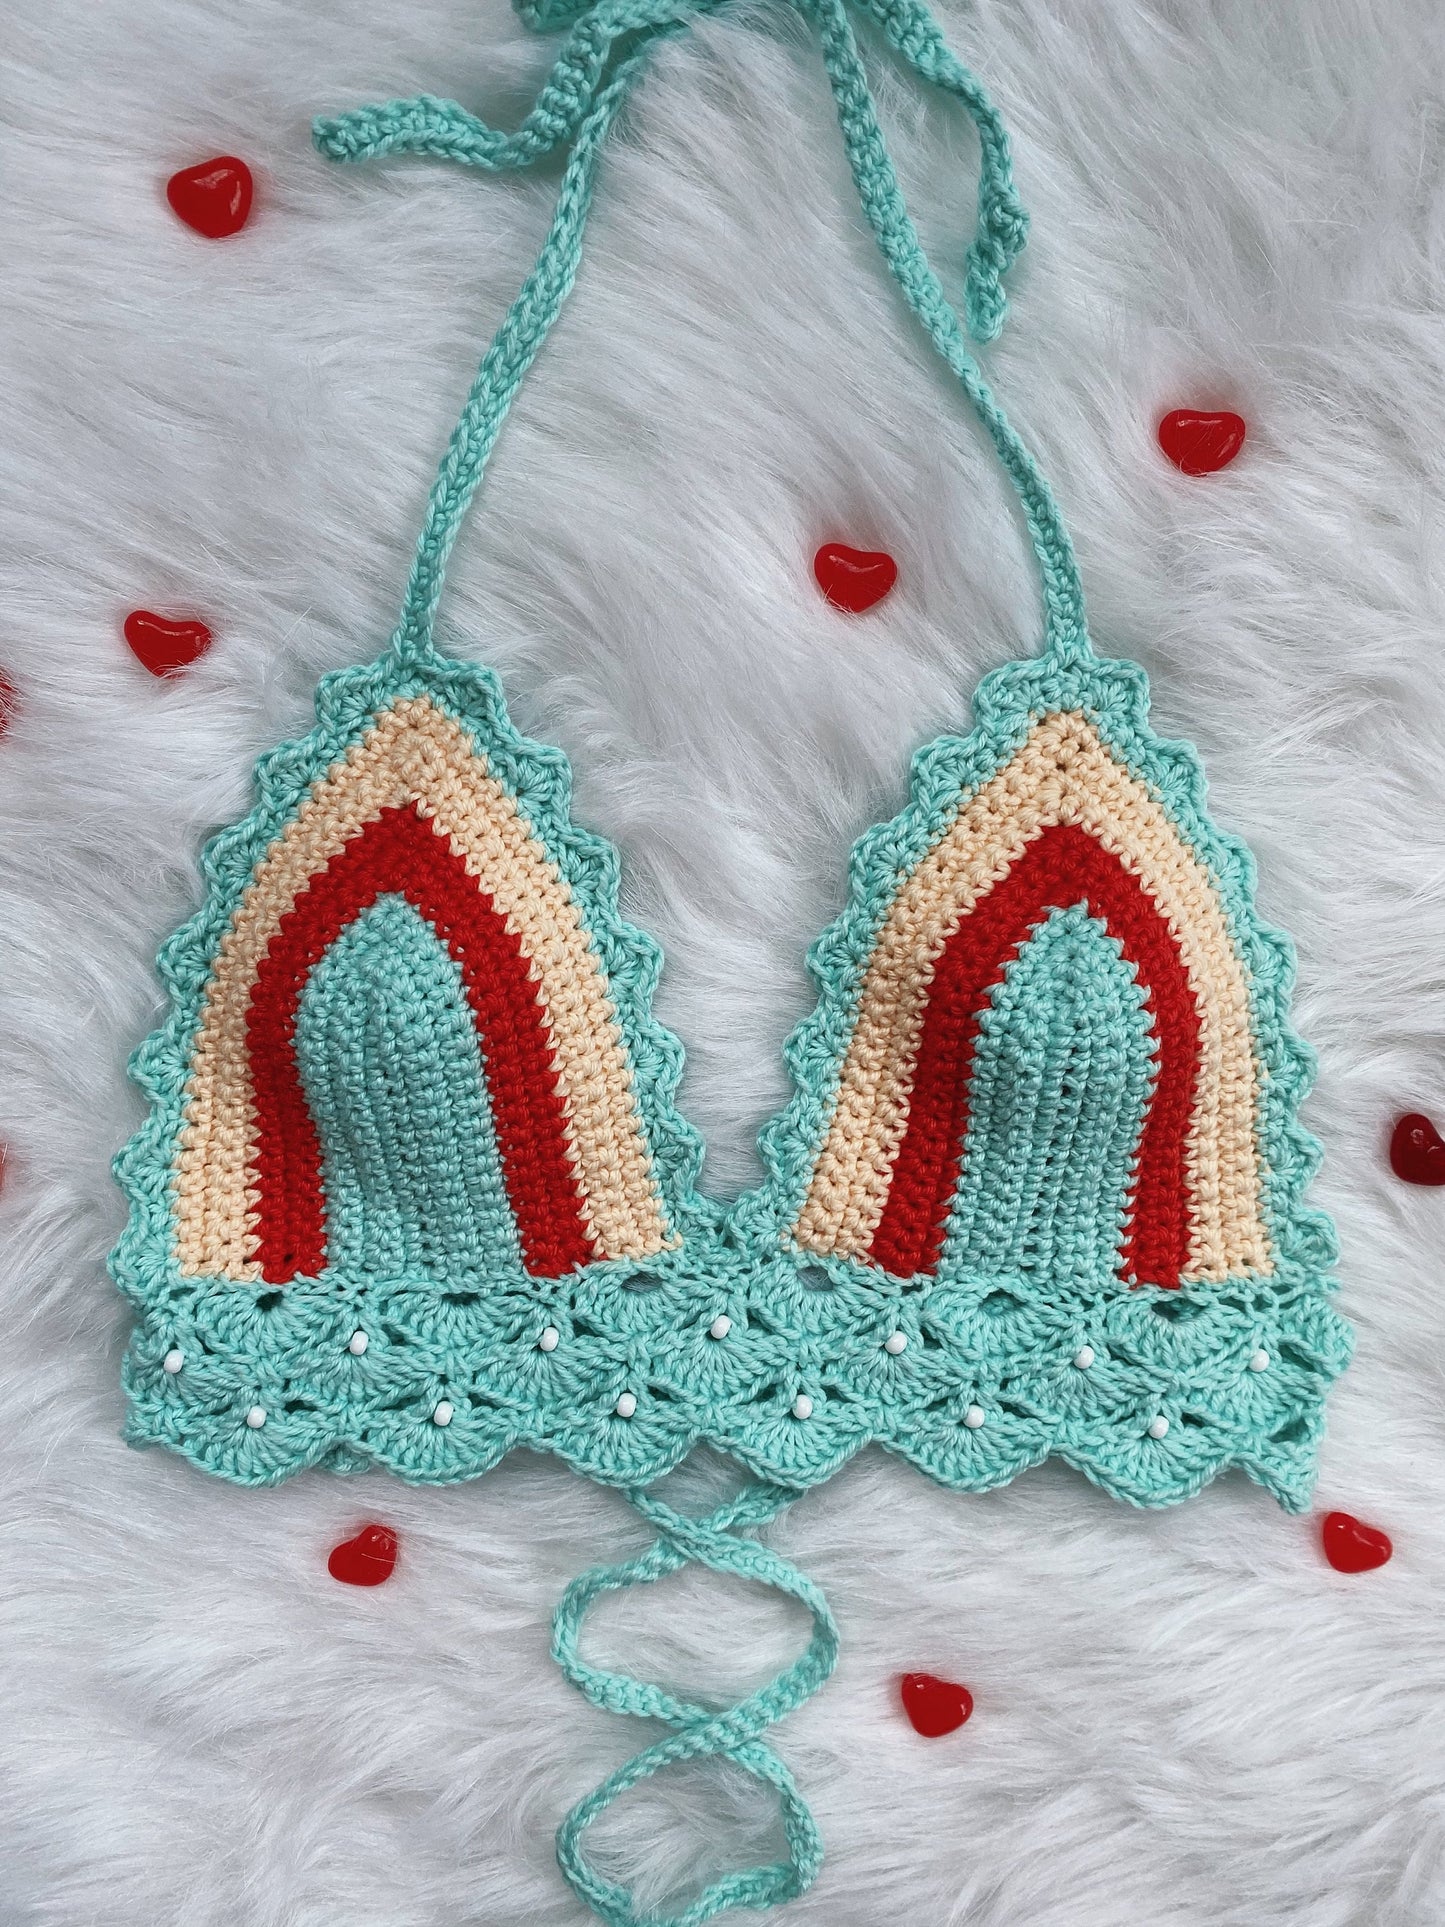 CROCHET PATTERN - Forget Me Not Bralette Crochet Pattern